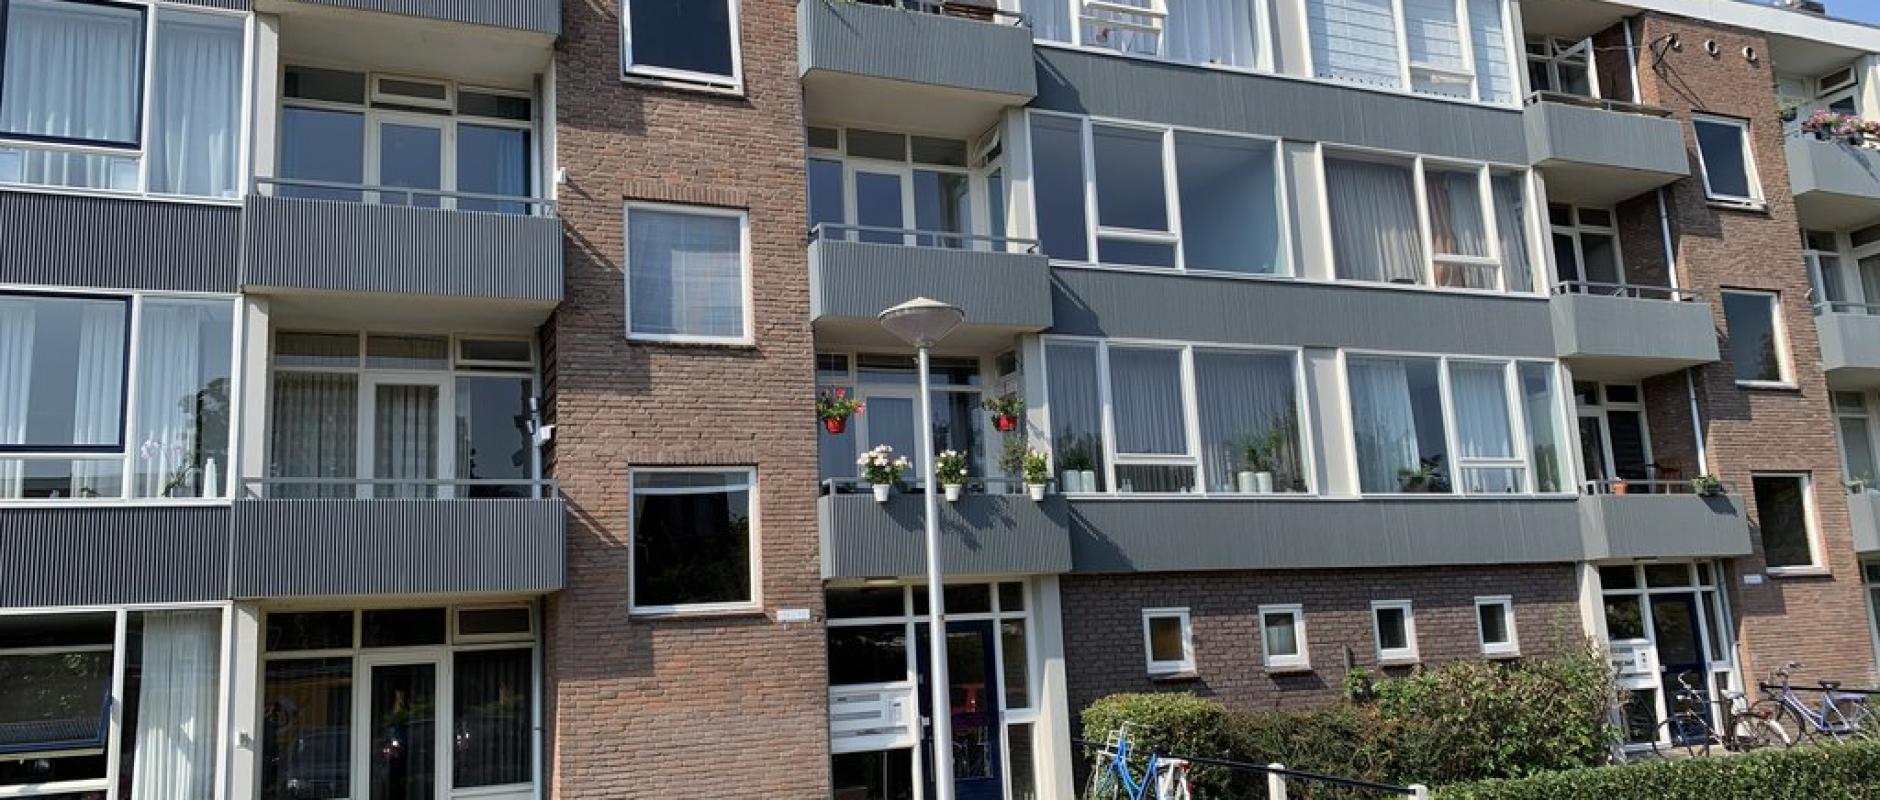 Woning te koop aan de Ruusbroecstraat 31 te Zwolle